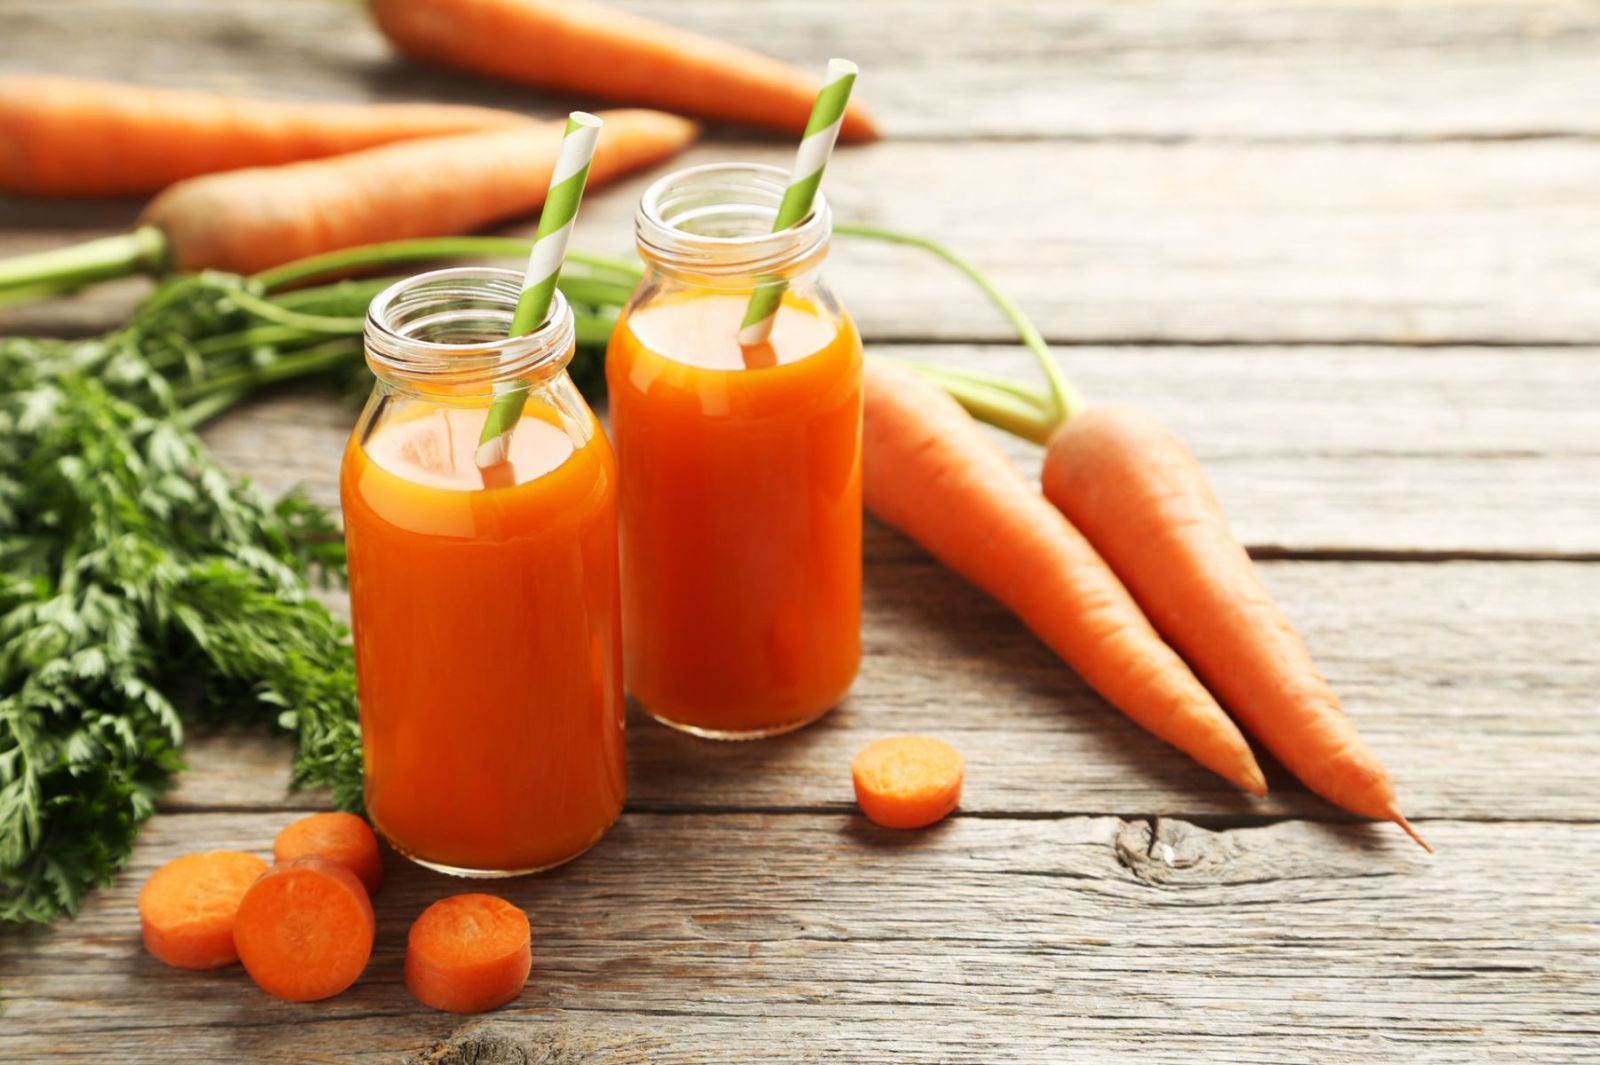 Theo các chuyên gia dinh dưỡng, trung bình 100g cà rốt chứa lượng calo khoảng 41.3 kcal